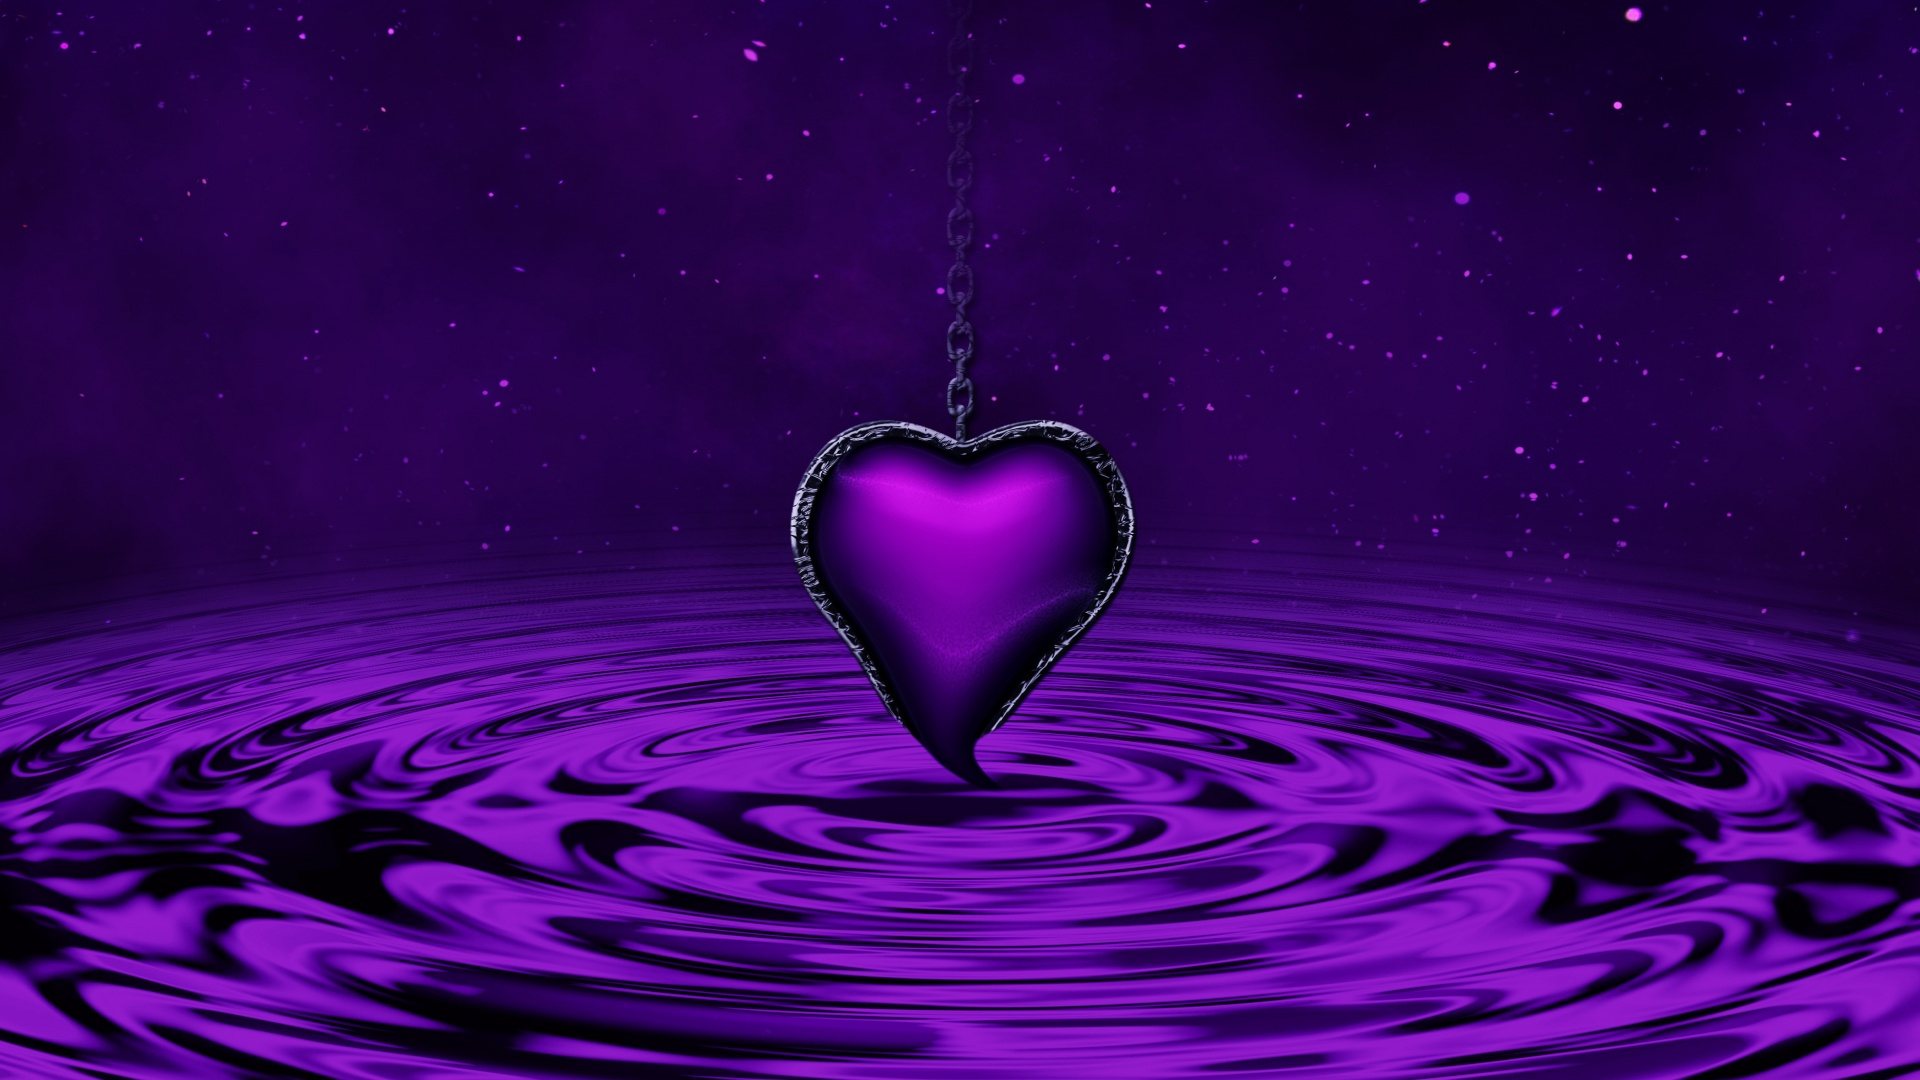 1920x1080 Purple Heart Water Waves Stars Chain Purple background 5K KDE Store